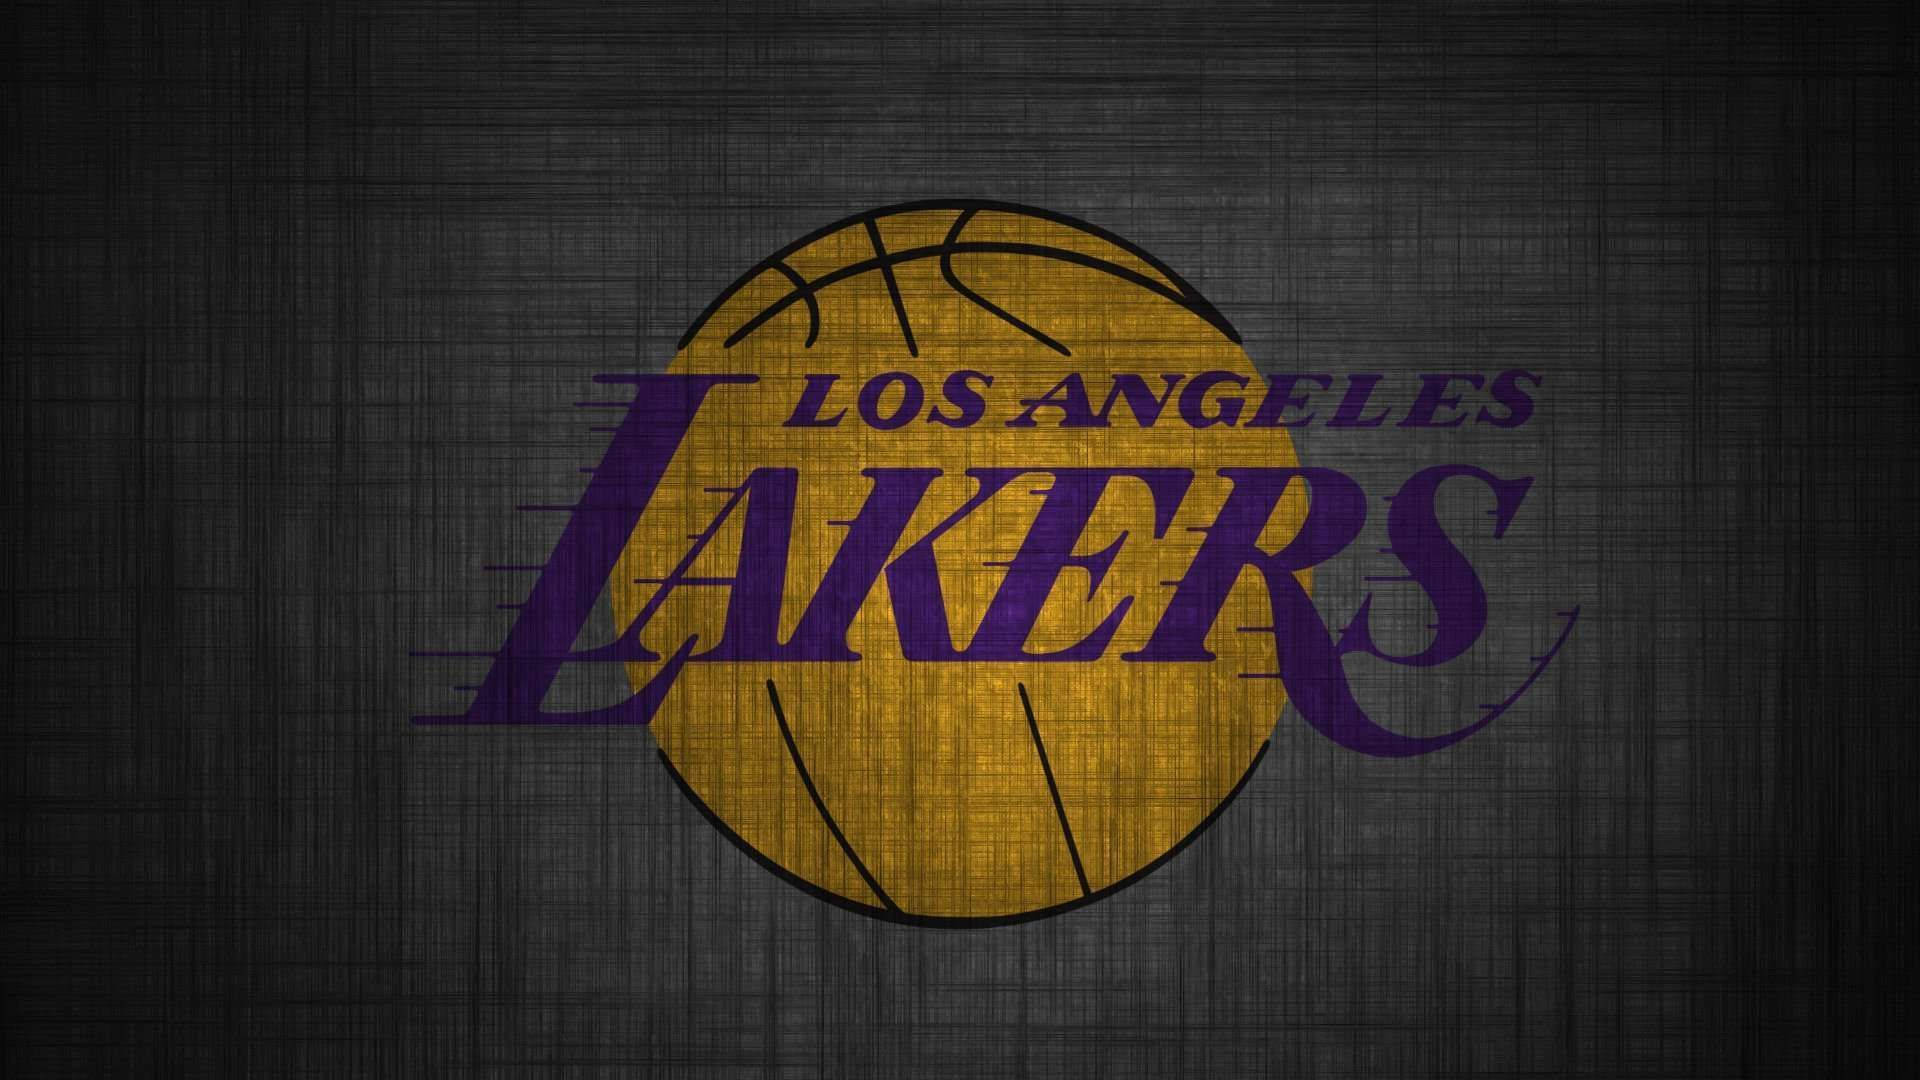 Logotipode Los Lakers En Gris Oscuro. Fondo de pantalla